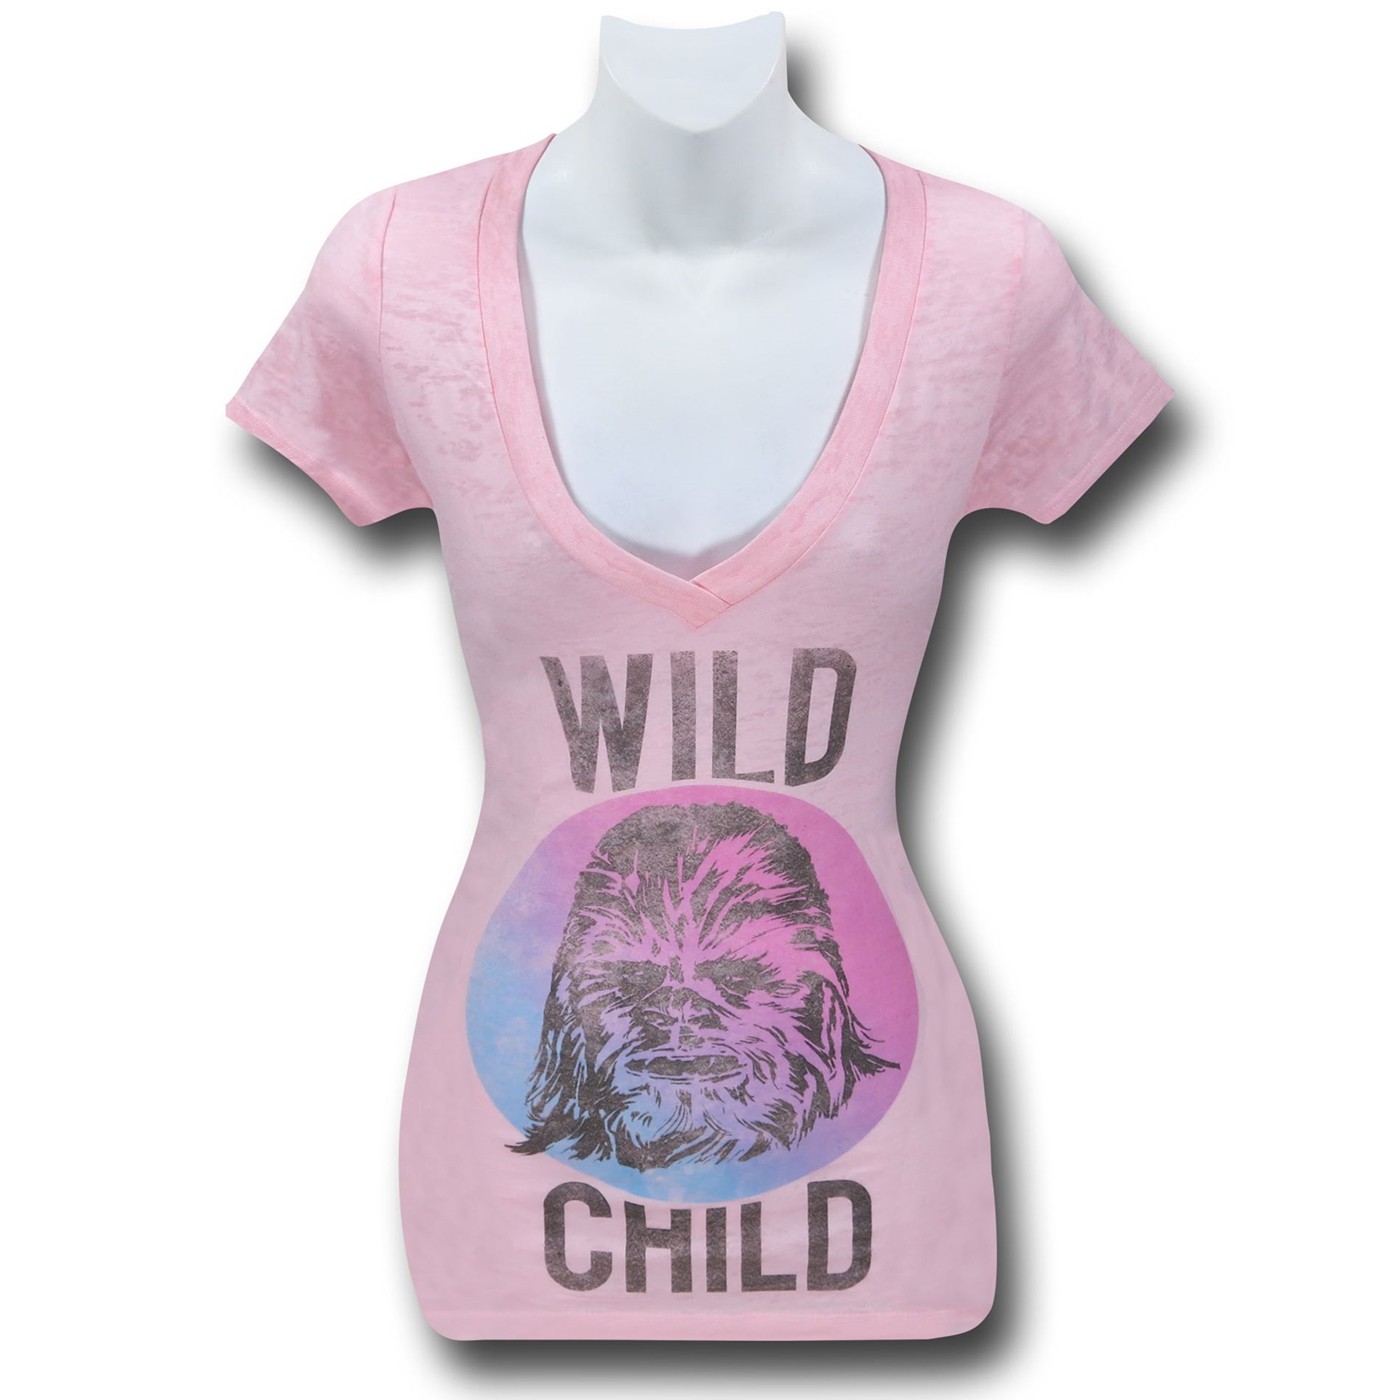 Star Wars Wild Child Women's Burnout T-Shirt